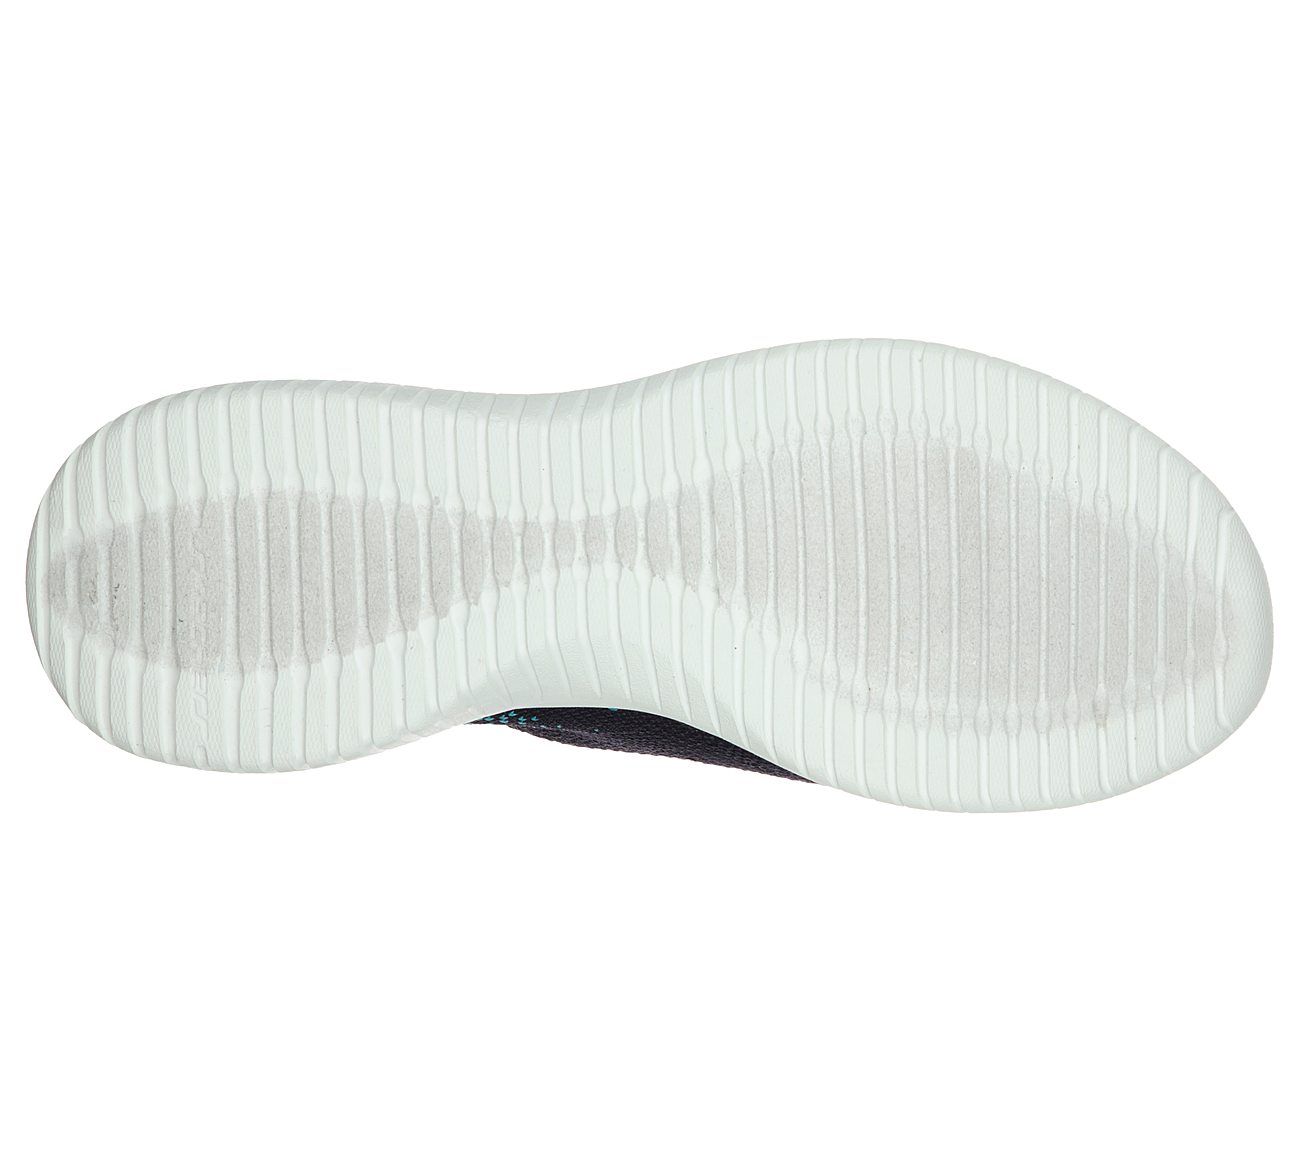 ULTRA FLEX-TWILIGHT TWINKLE, NAVY/BLUE Footwear Bottom View